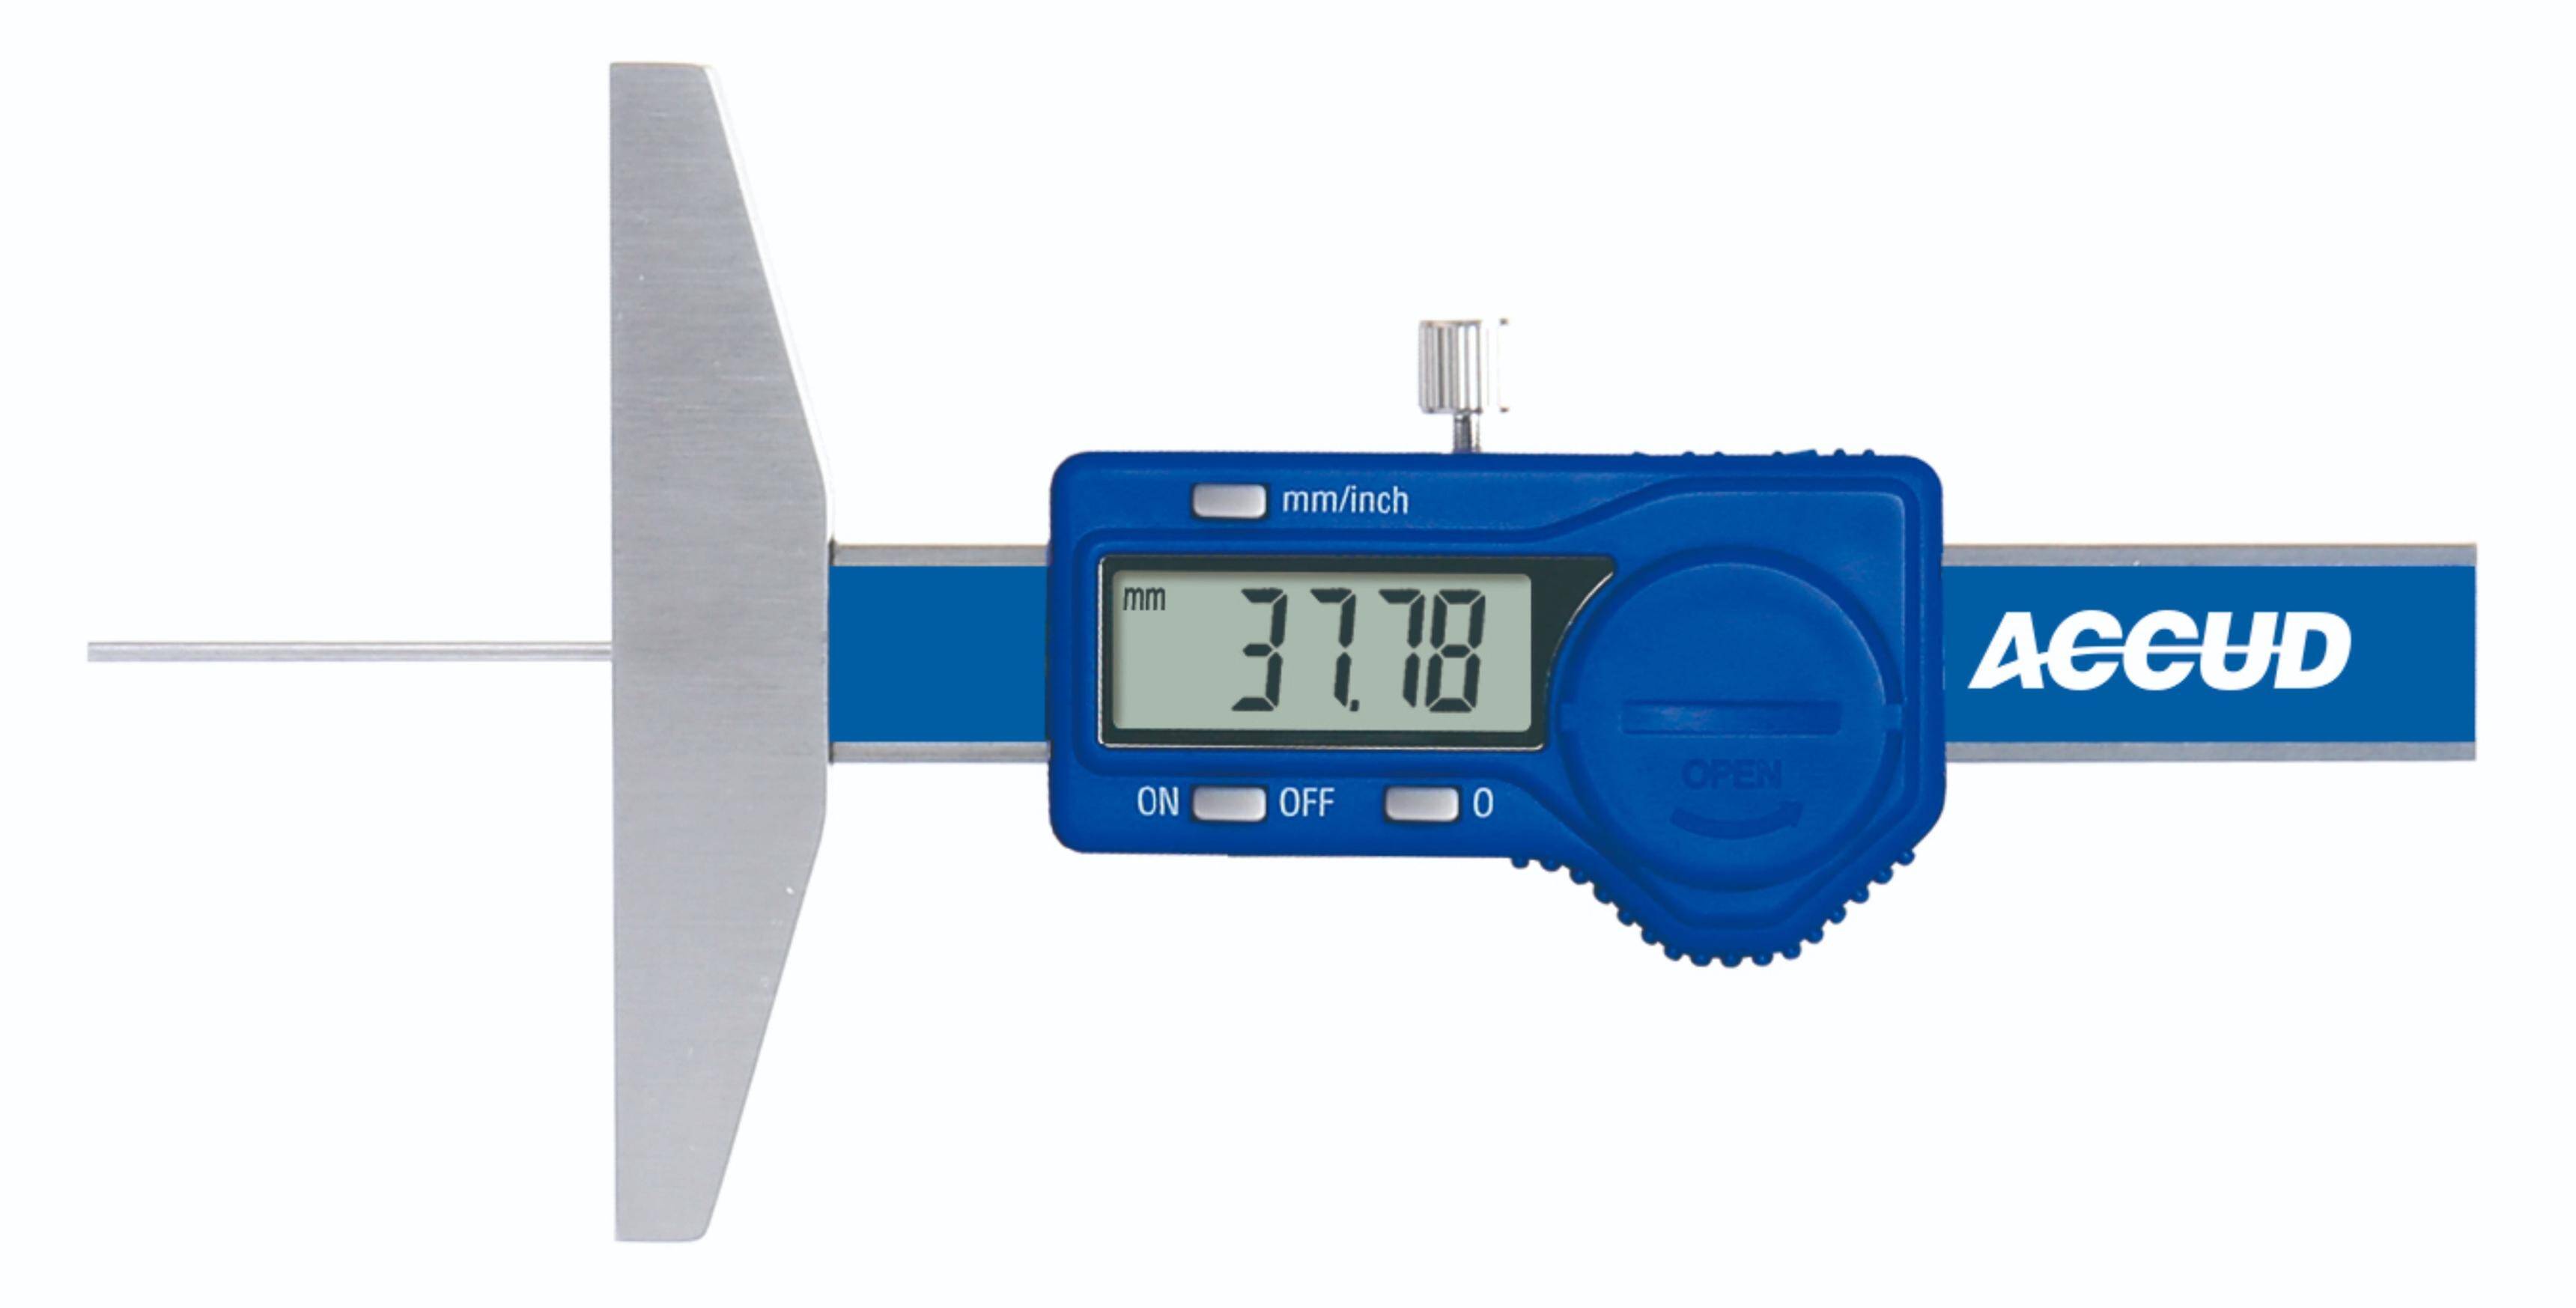 ACCUD głębokościomierz elektroniczny 25/0.01 mm z długim trzpieniem pomiarowym 194-001-11 (Zdjęcie 1)